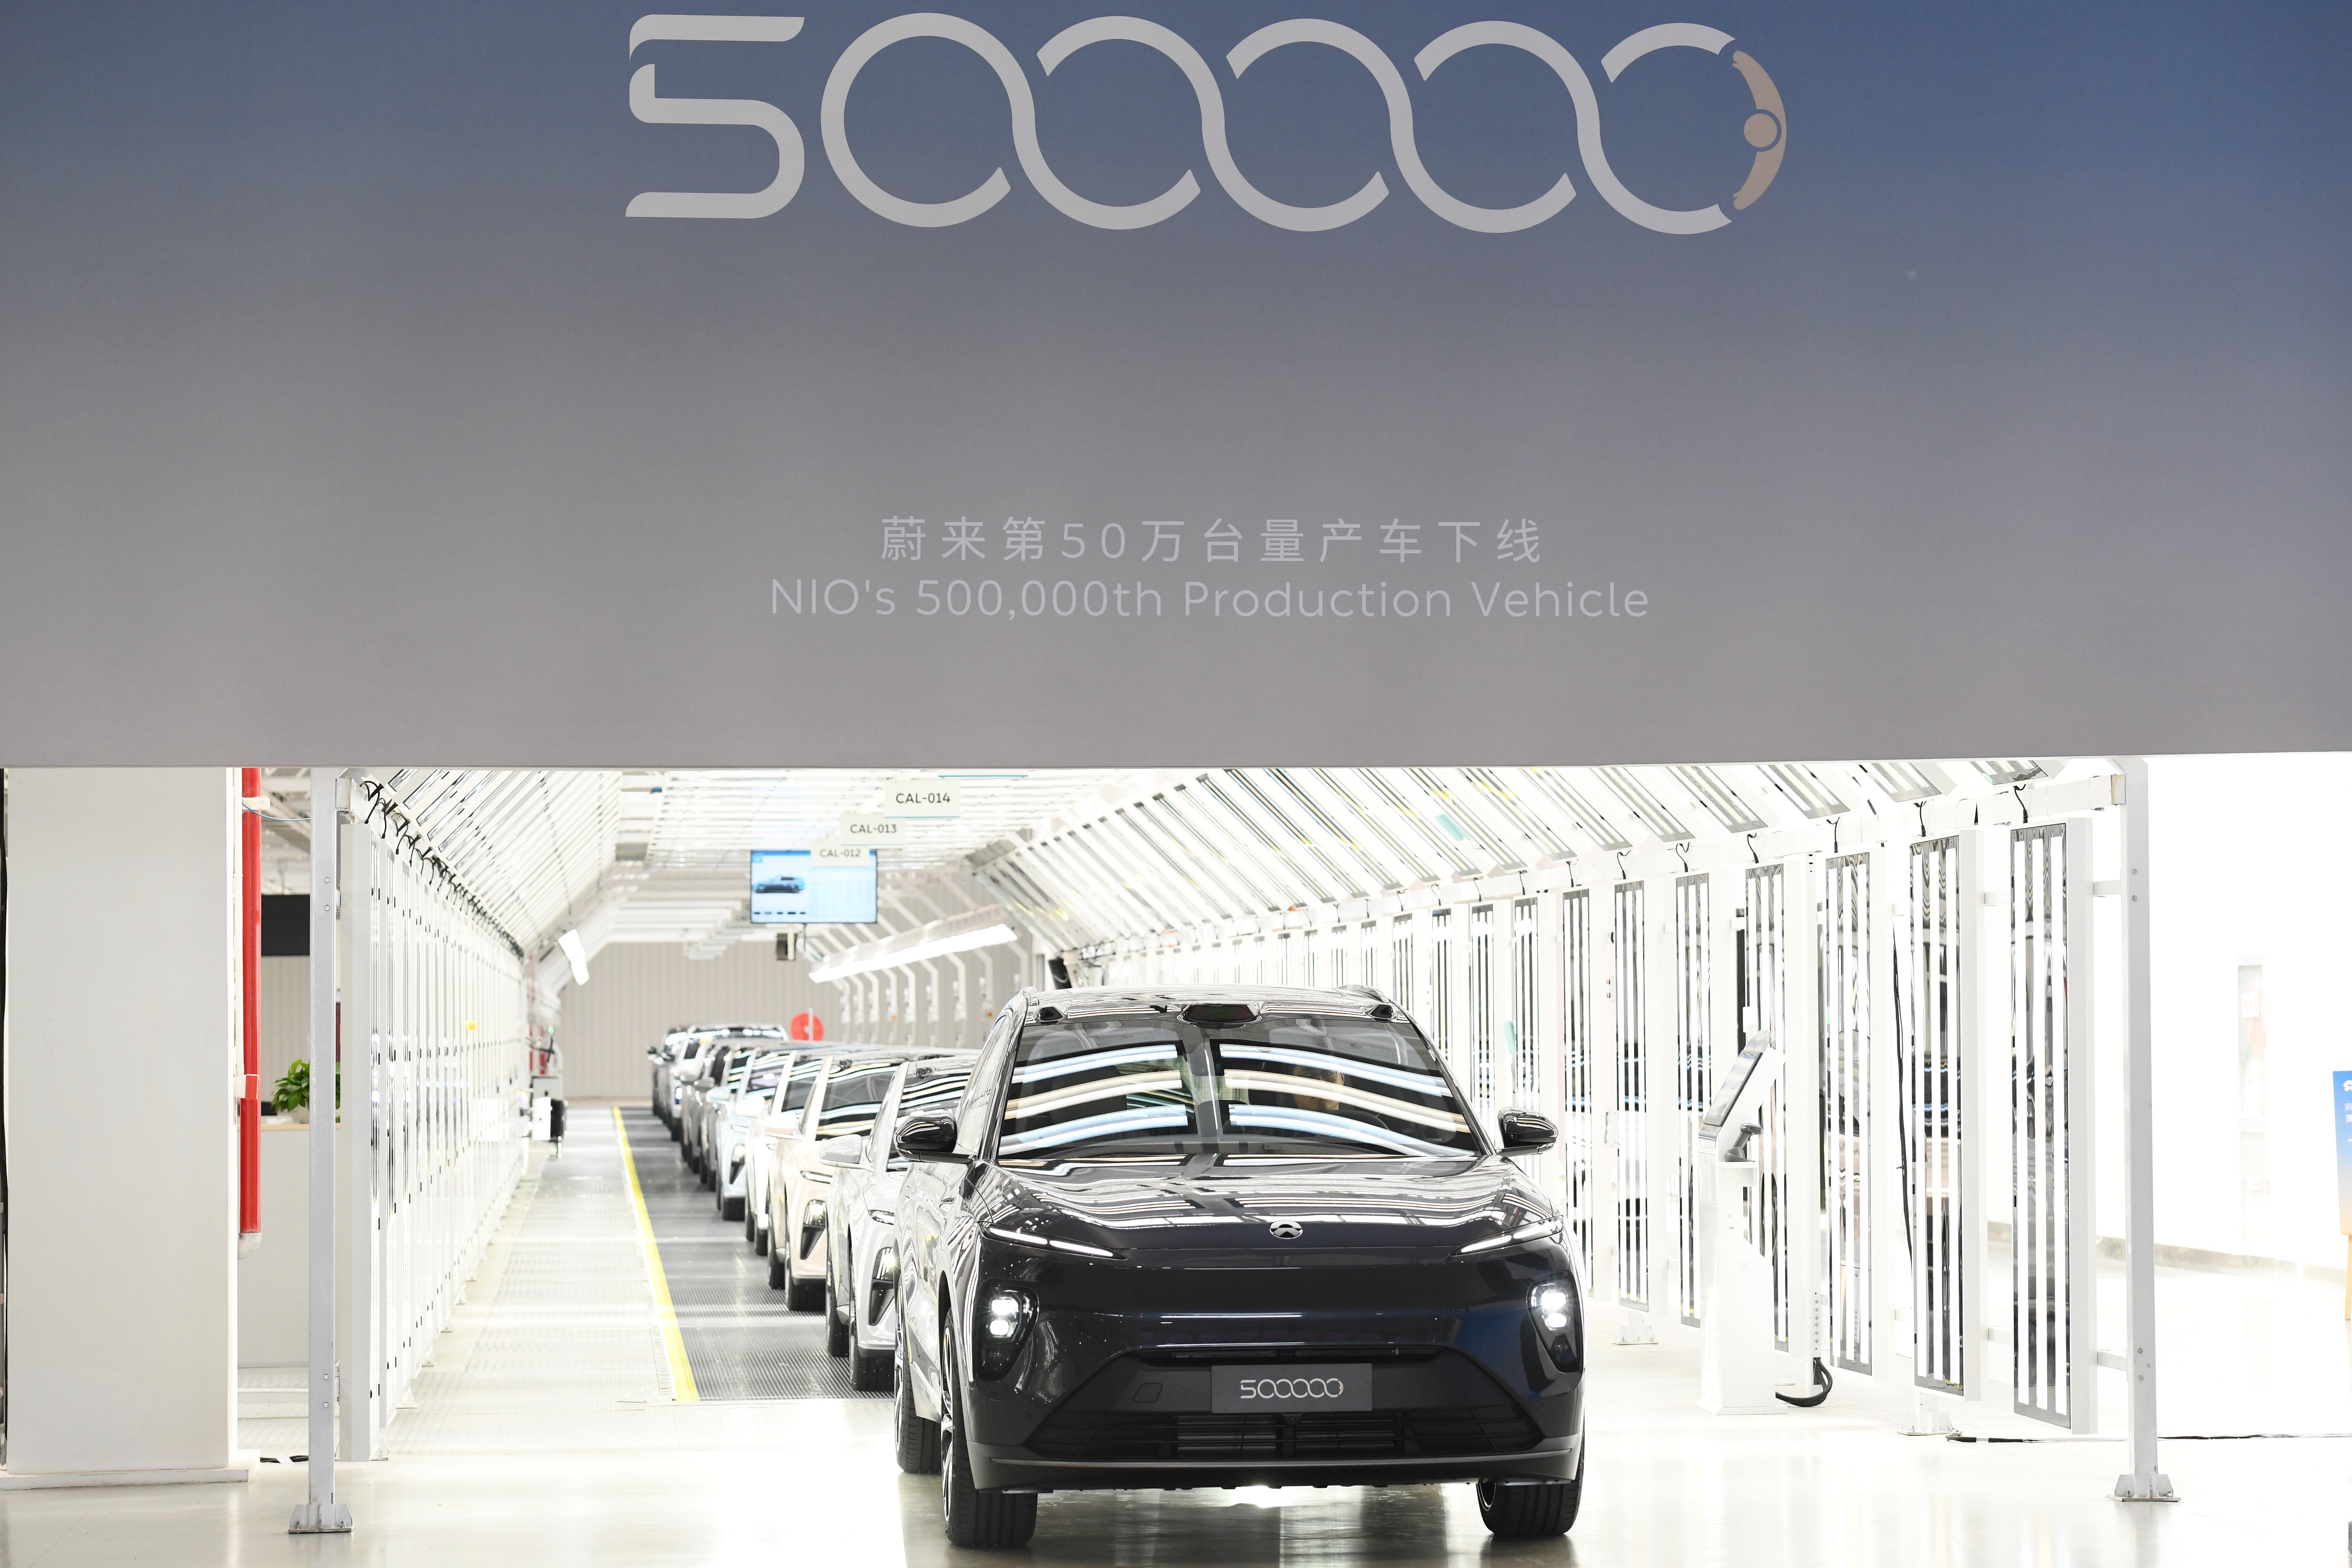 ค่ายรถยนต์ไฟฟ้าจีน 'นีโอ' ส่งรถคันที่ 5 แสน ออกจากสายการผลิต